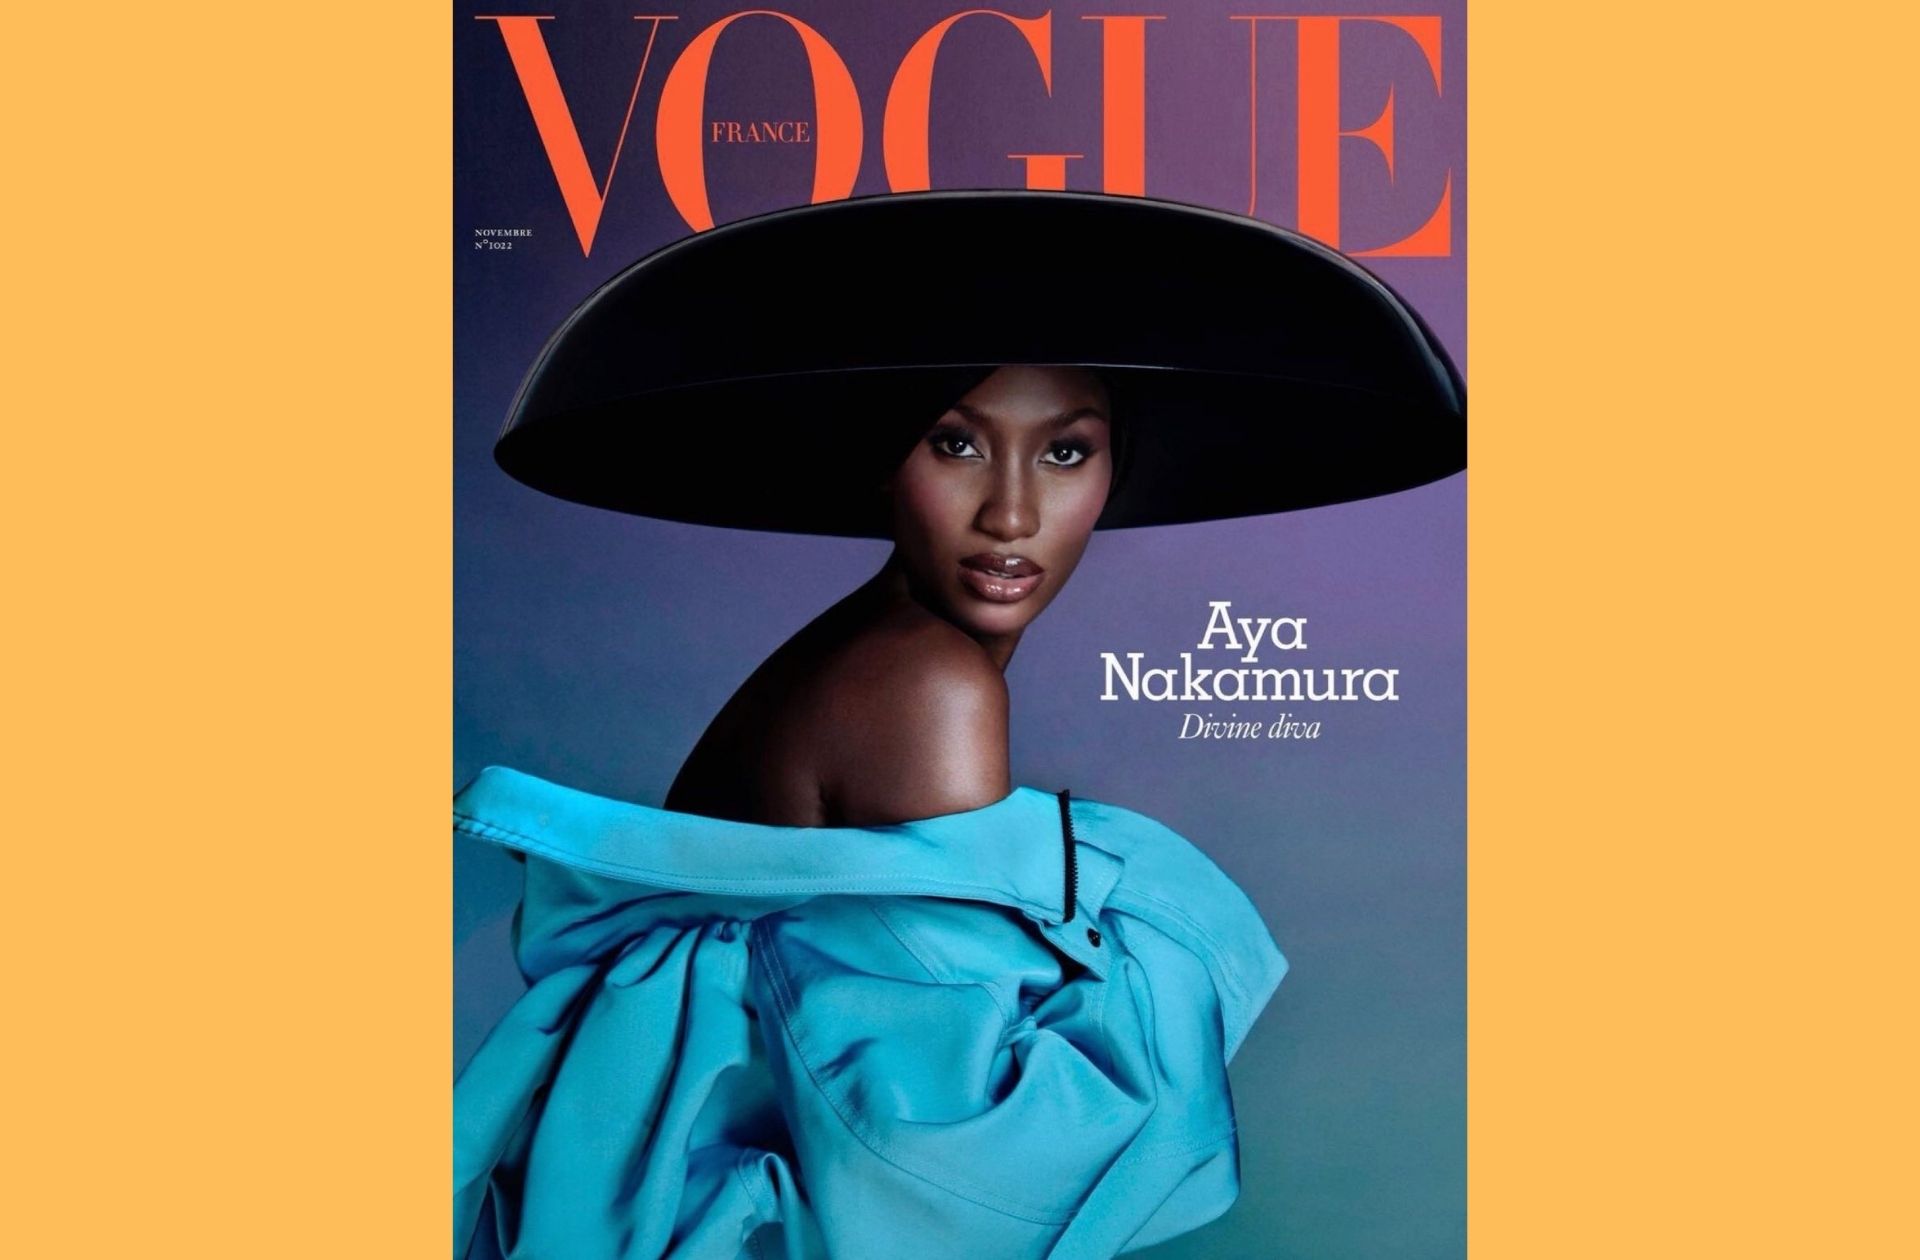 Vogue France met (enfin) Aya Nakamura en couverture pour illustrer son renouveau